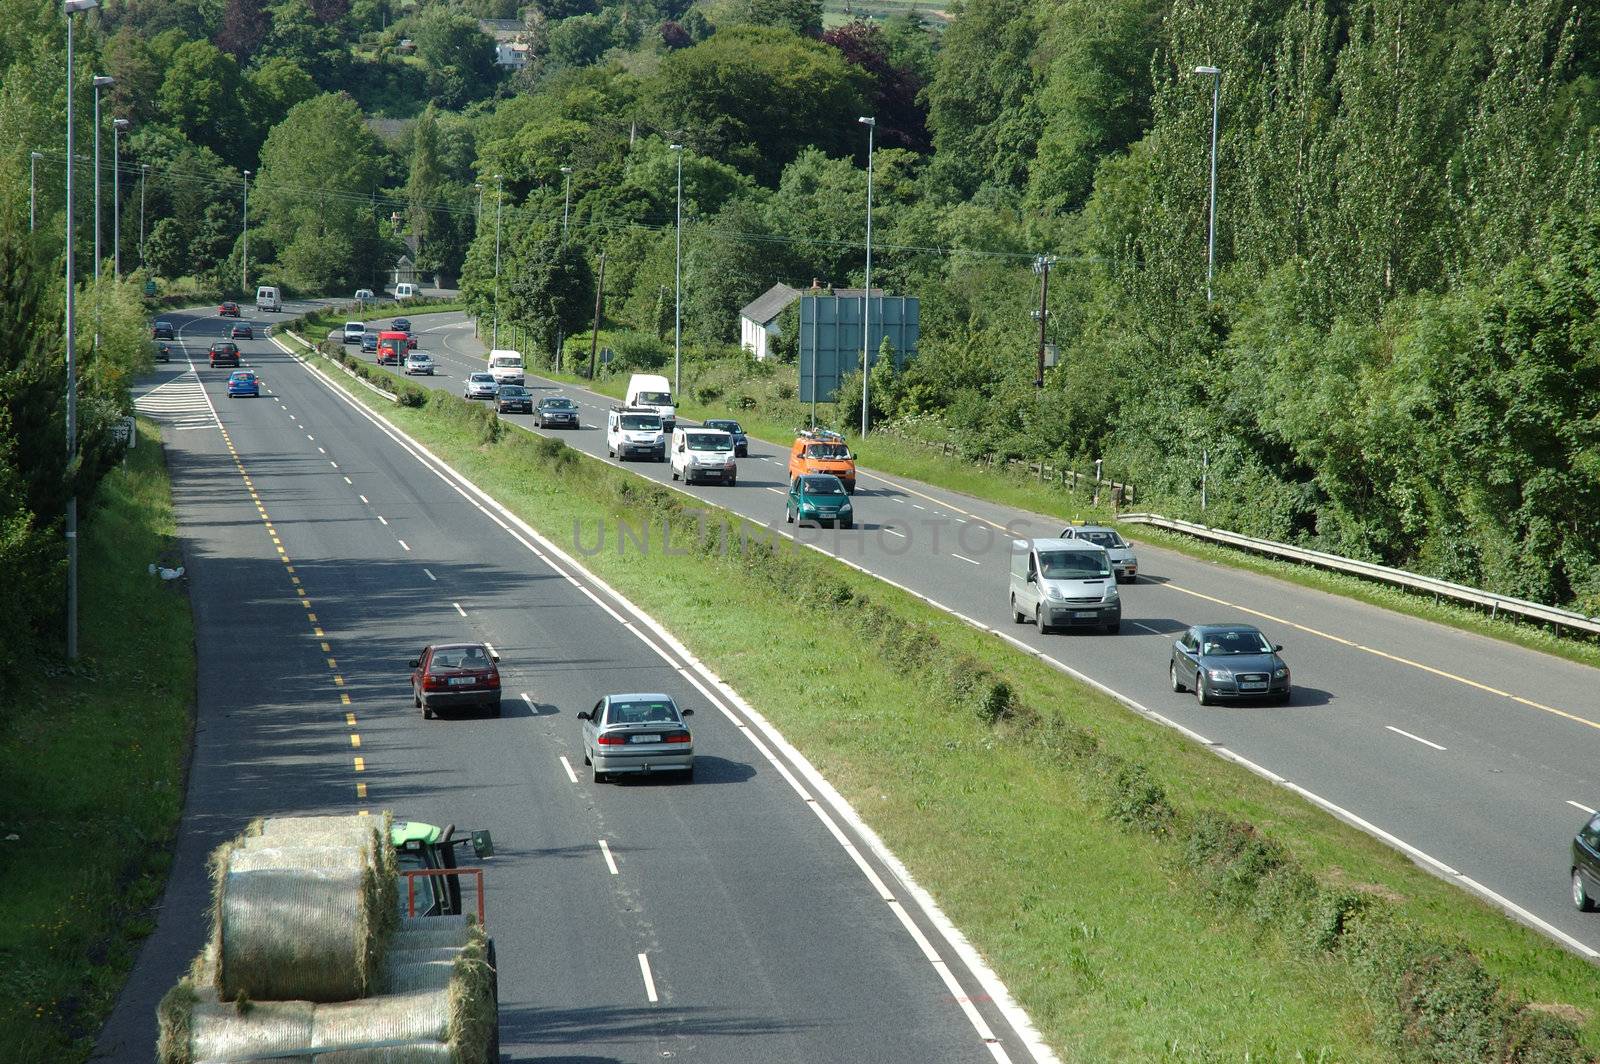 Busy Motorway by sjeacle